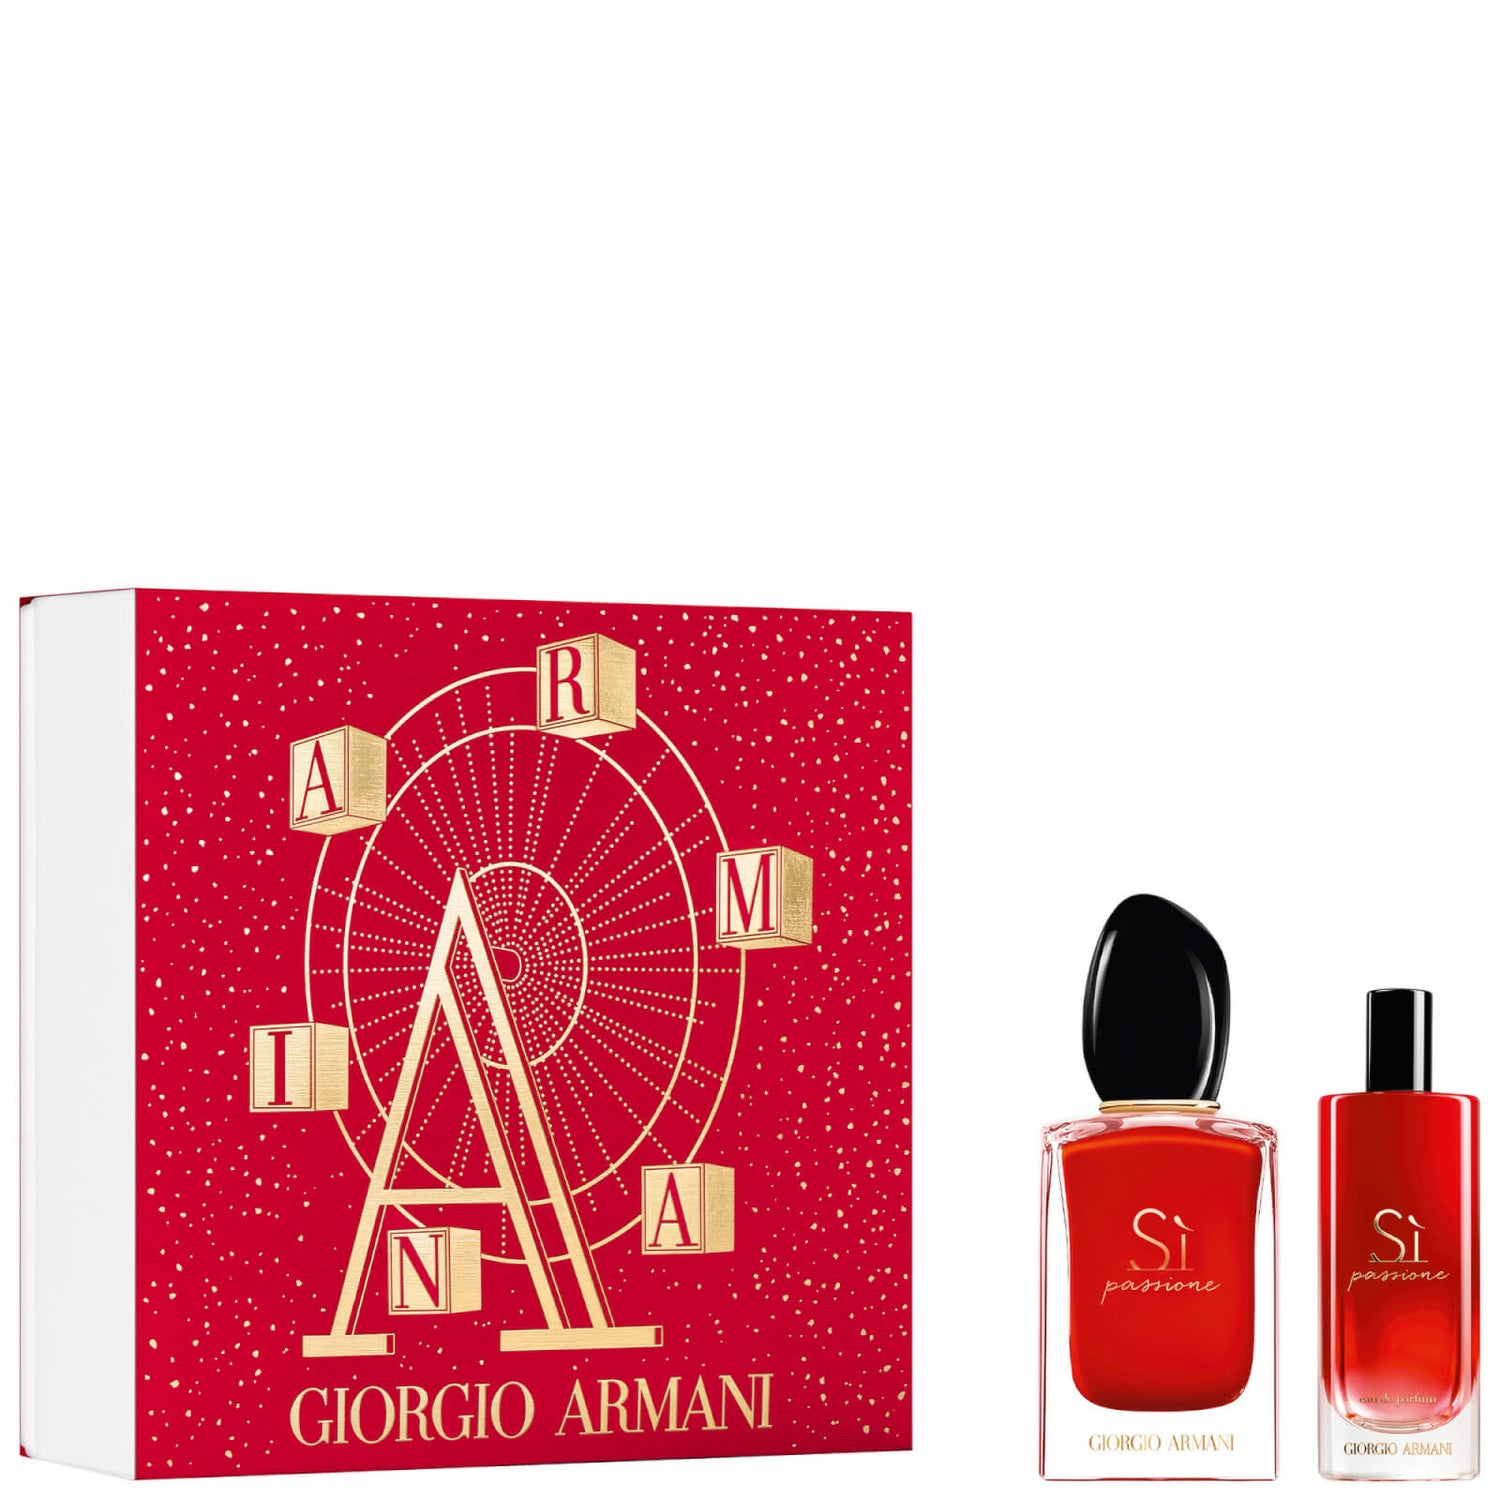 Armani Si Passione Eau De Parfum Gift Set for Her